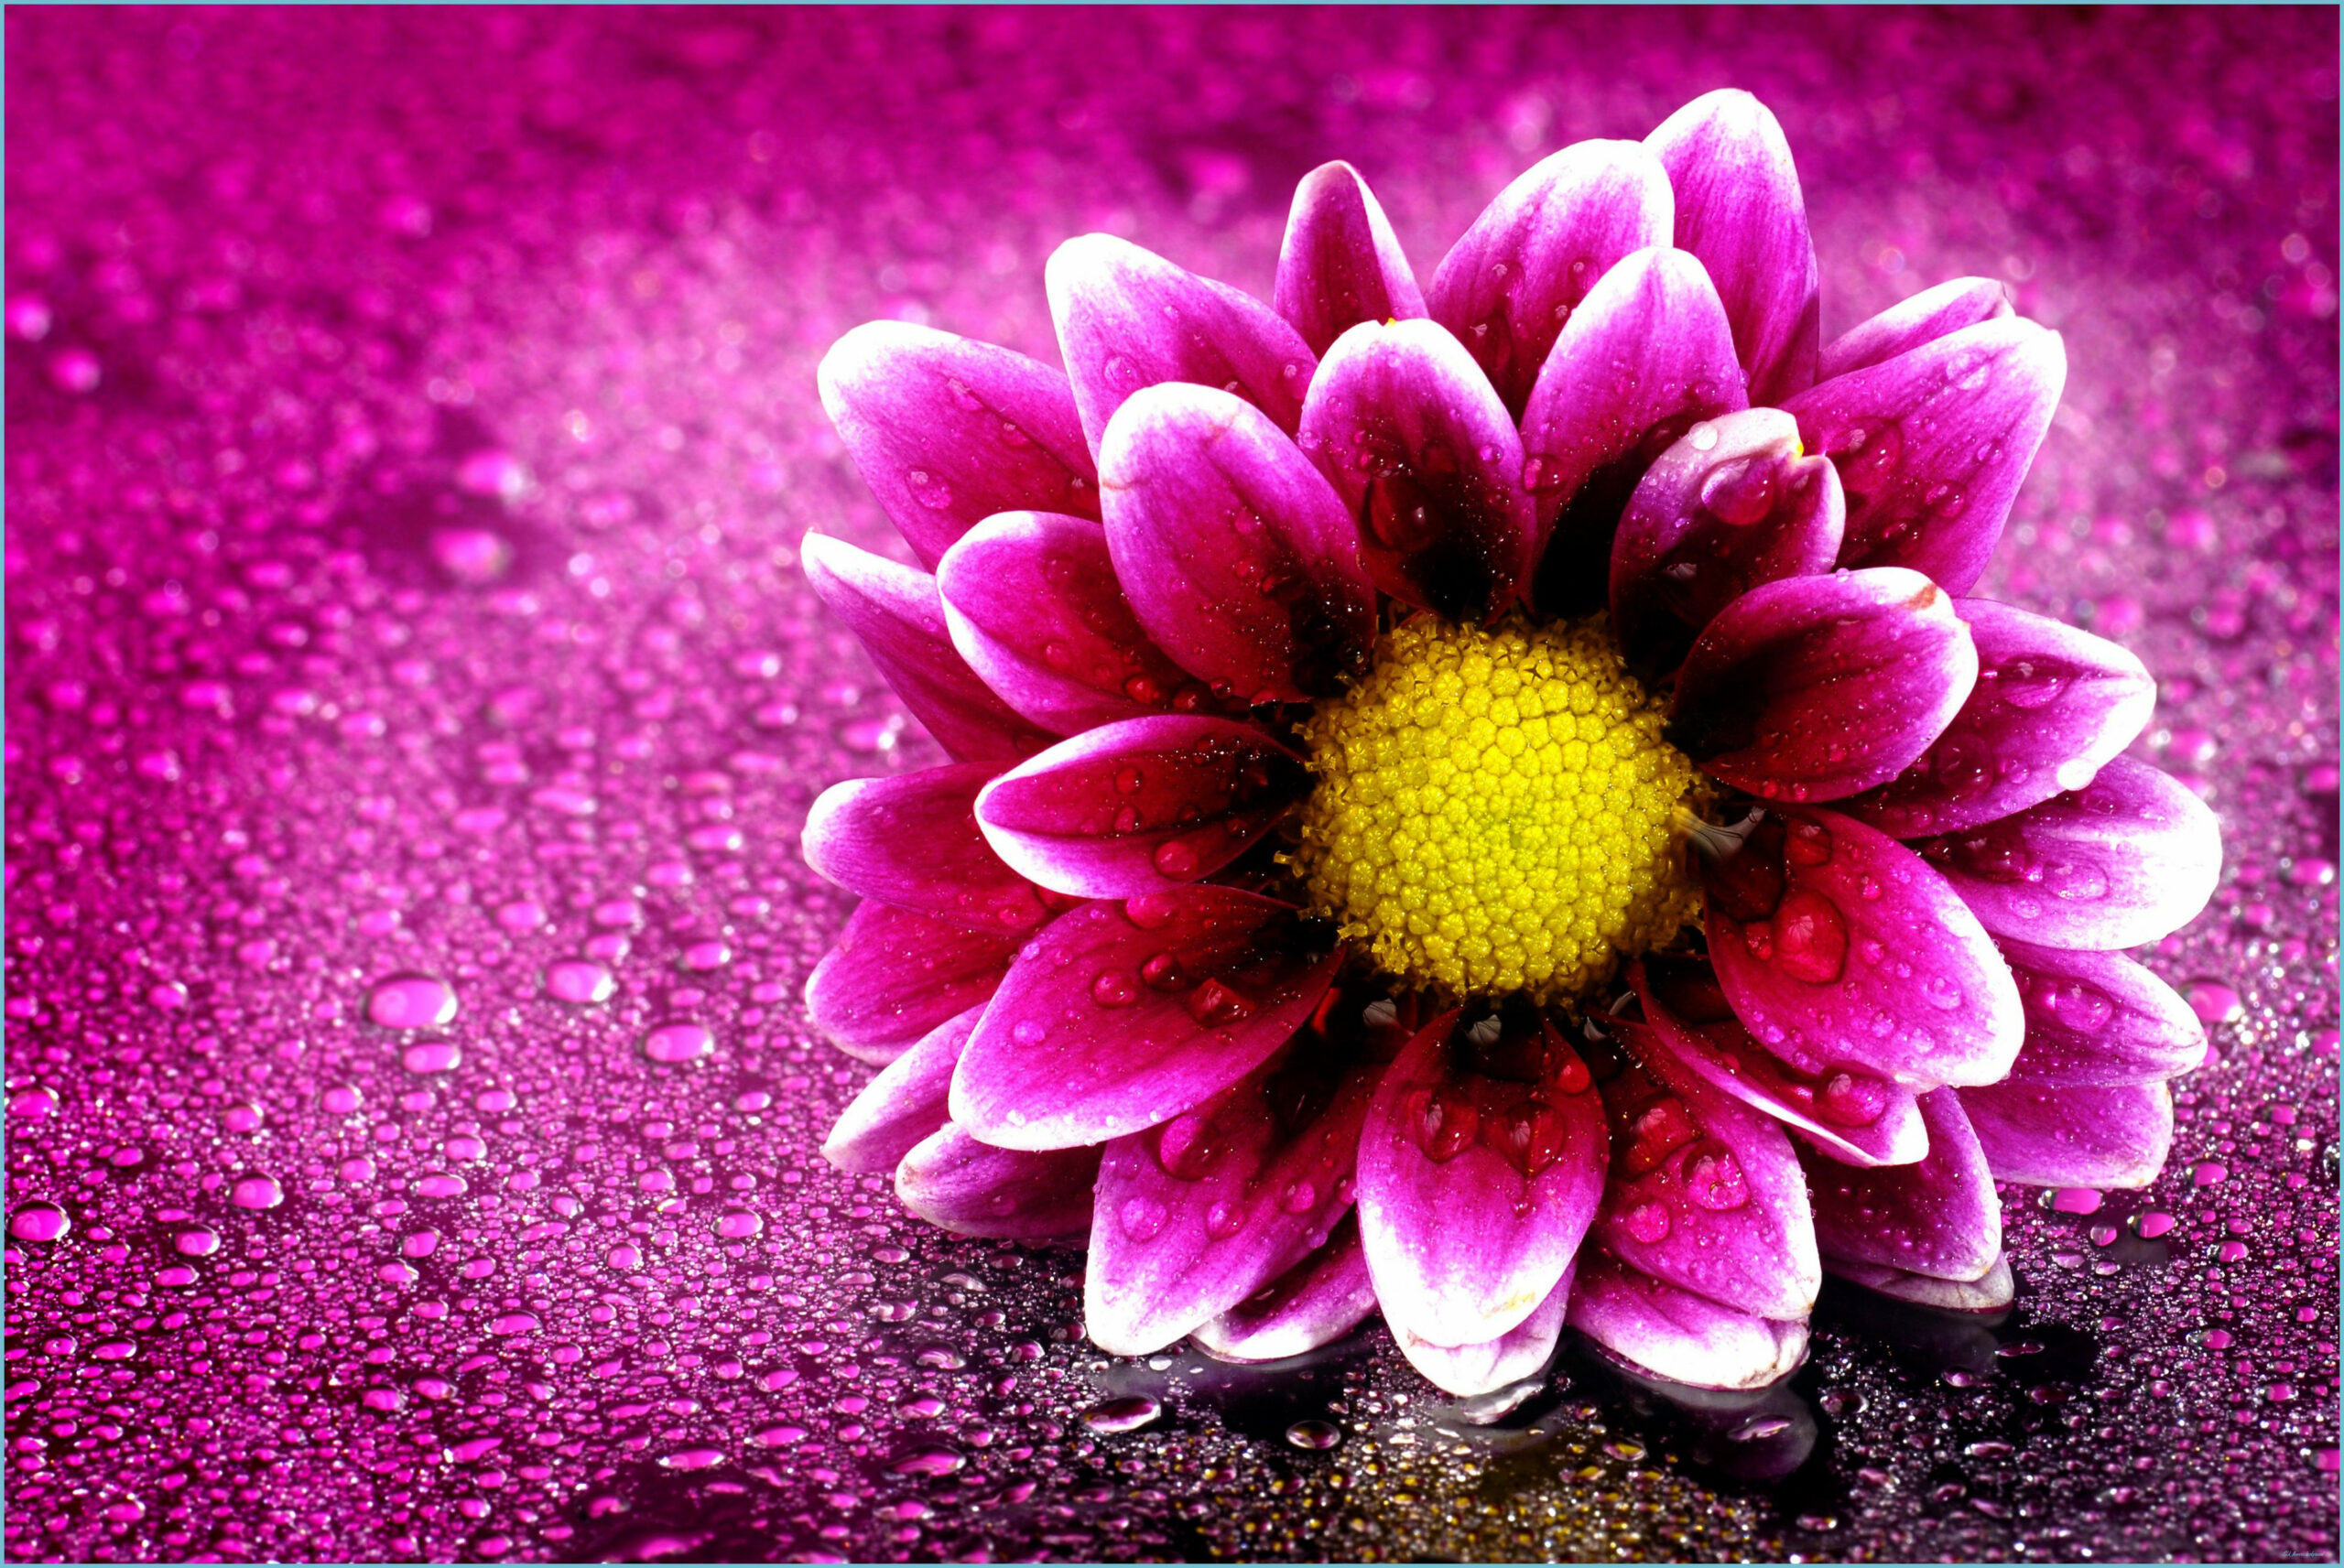 Full Screen 8k Flowers Wallpaper Free Full Screen 8k Flowers Background